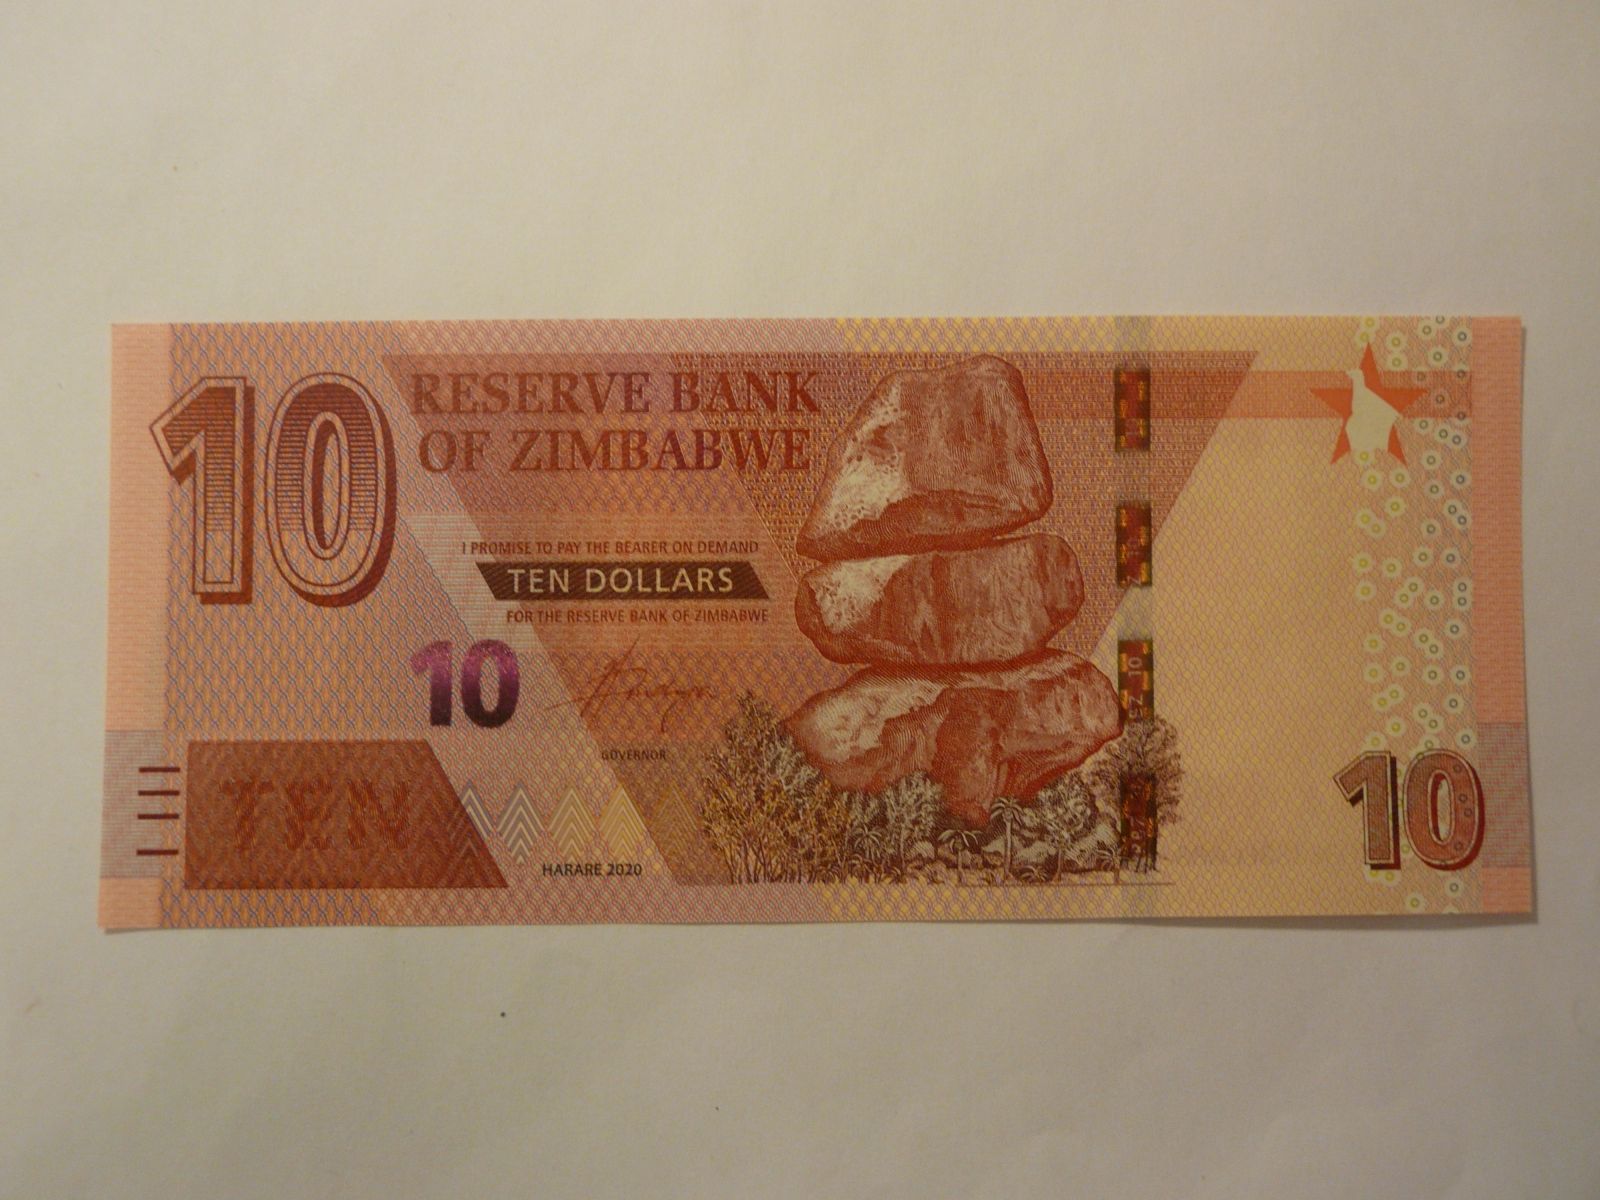 10 Dollars, 2020 Zimbabwe